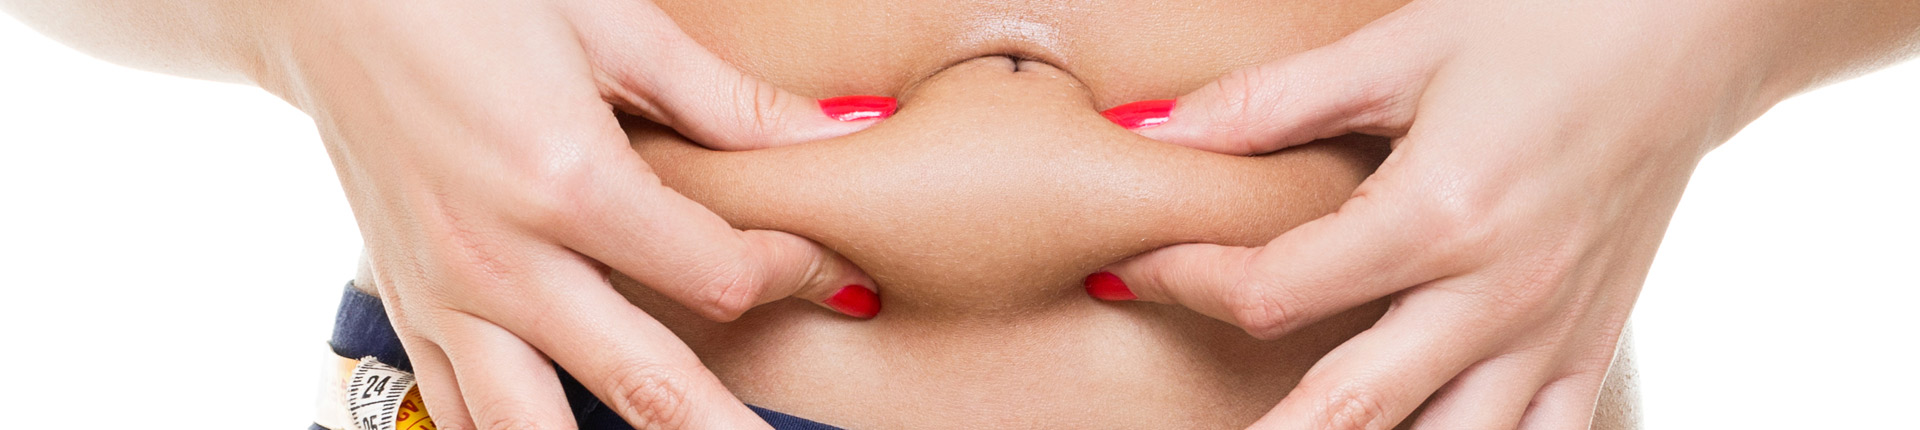 Odchudzanie: Spadek wagi, a wraz z nią luźna skóra